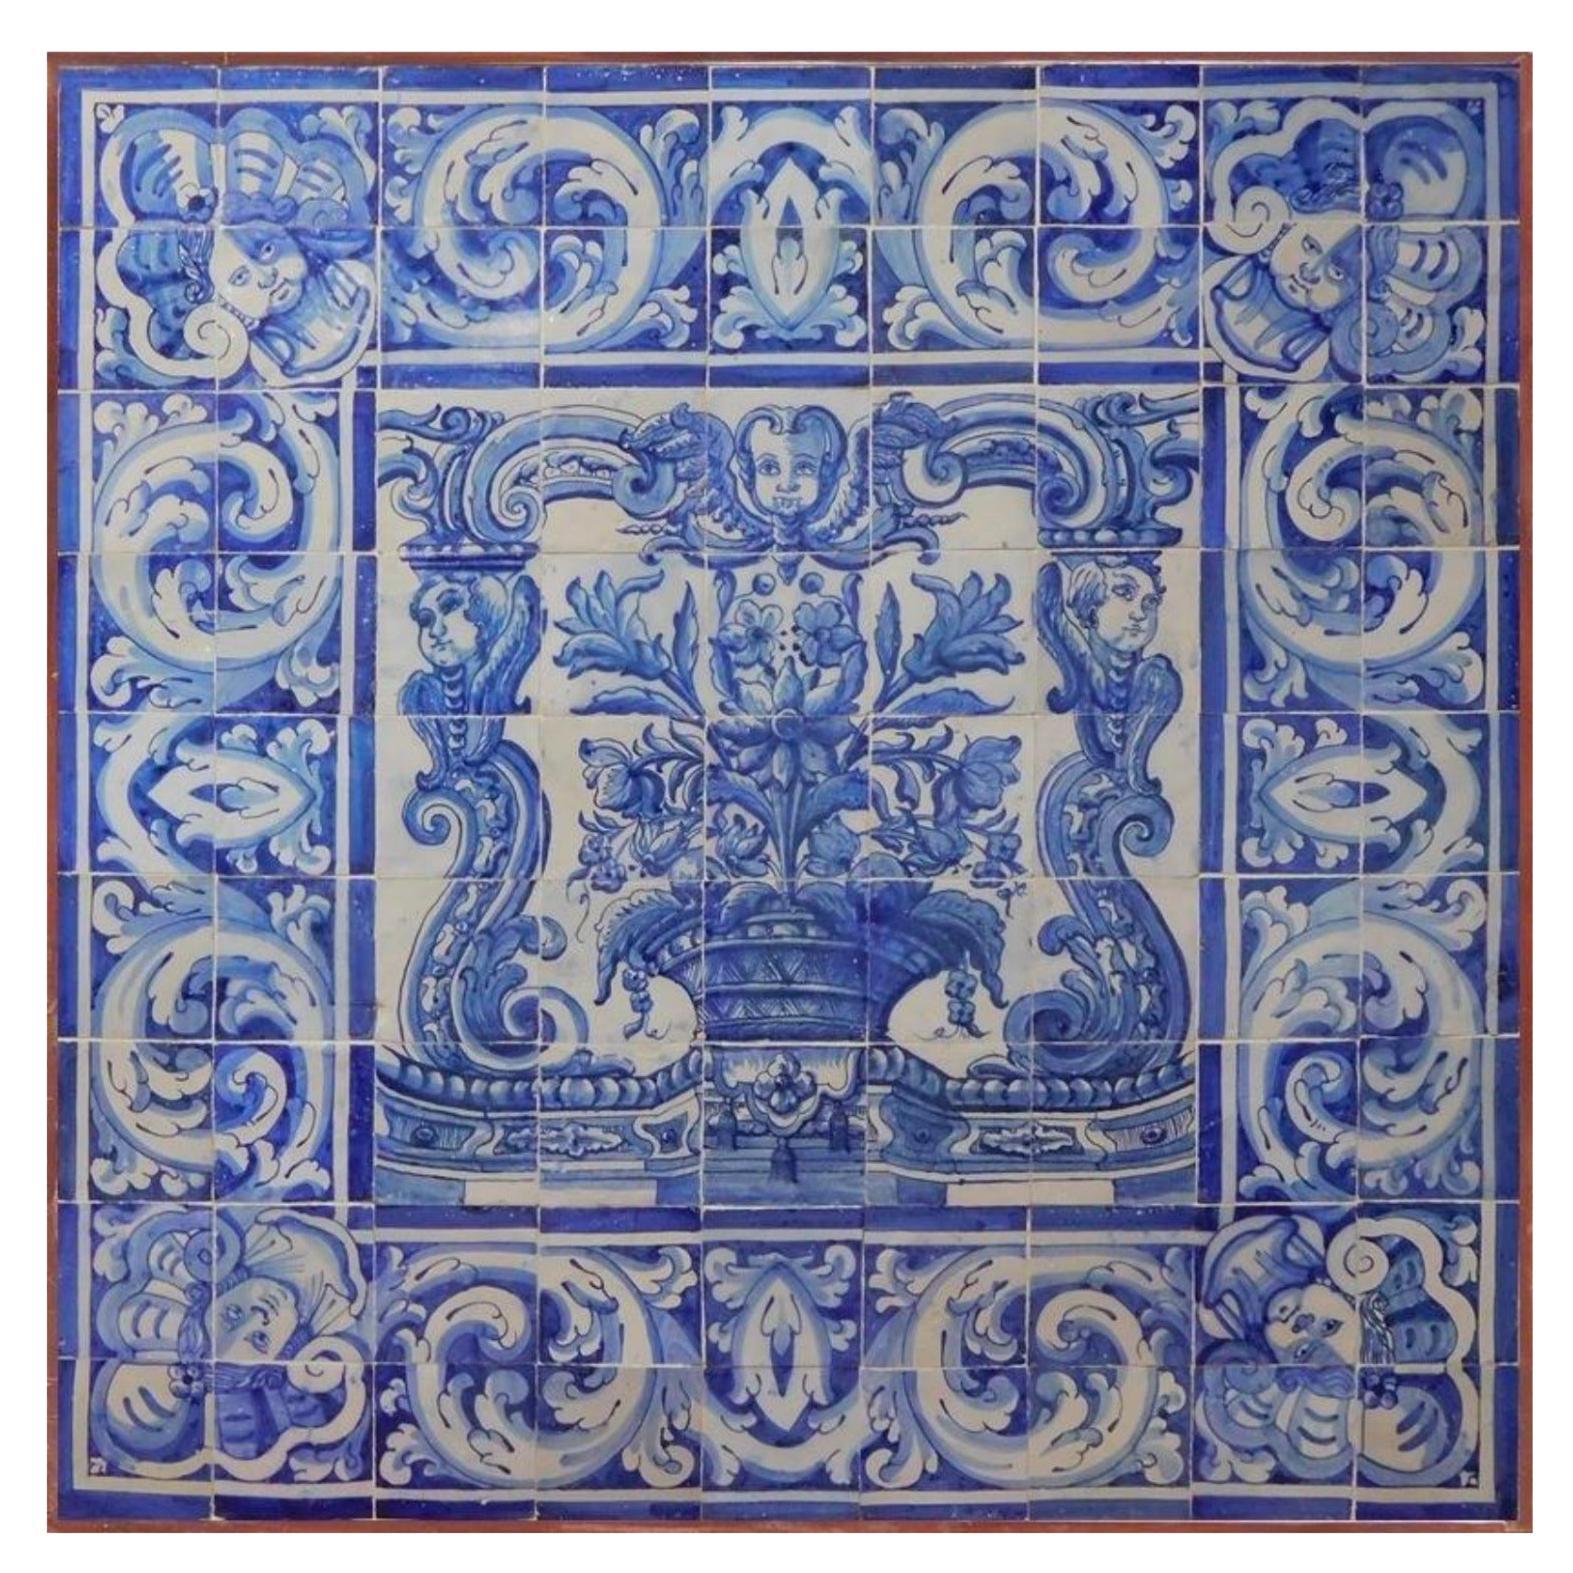 18th Century Portuguese "Azulejos" Panel "Vase"